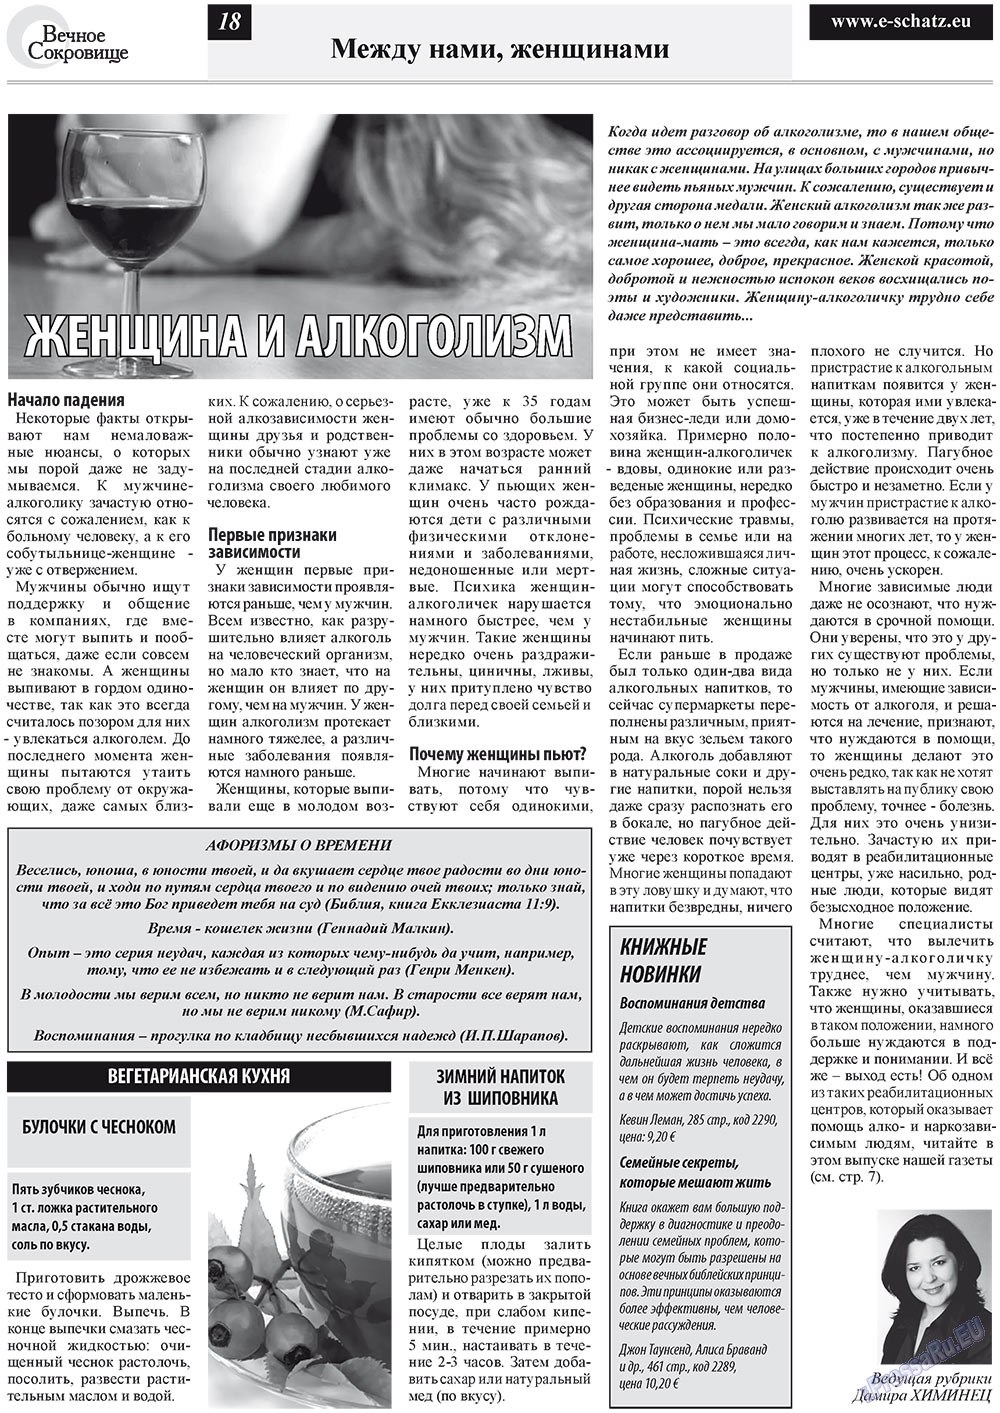 Вечное сокровище, газета. 2012 №1 стр.18